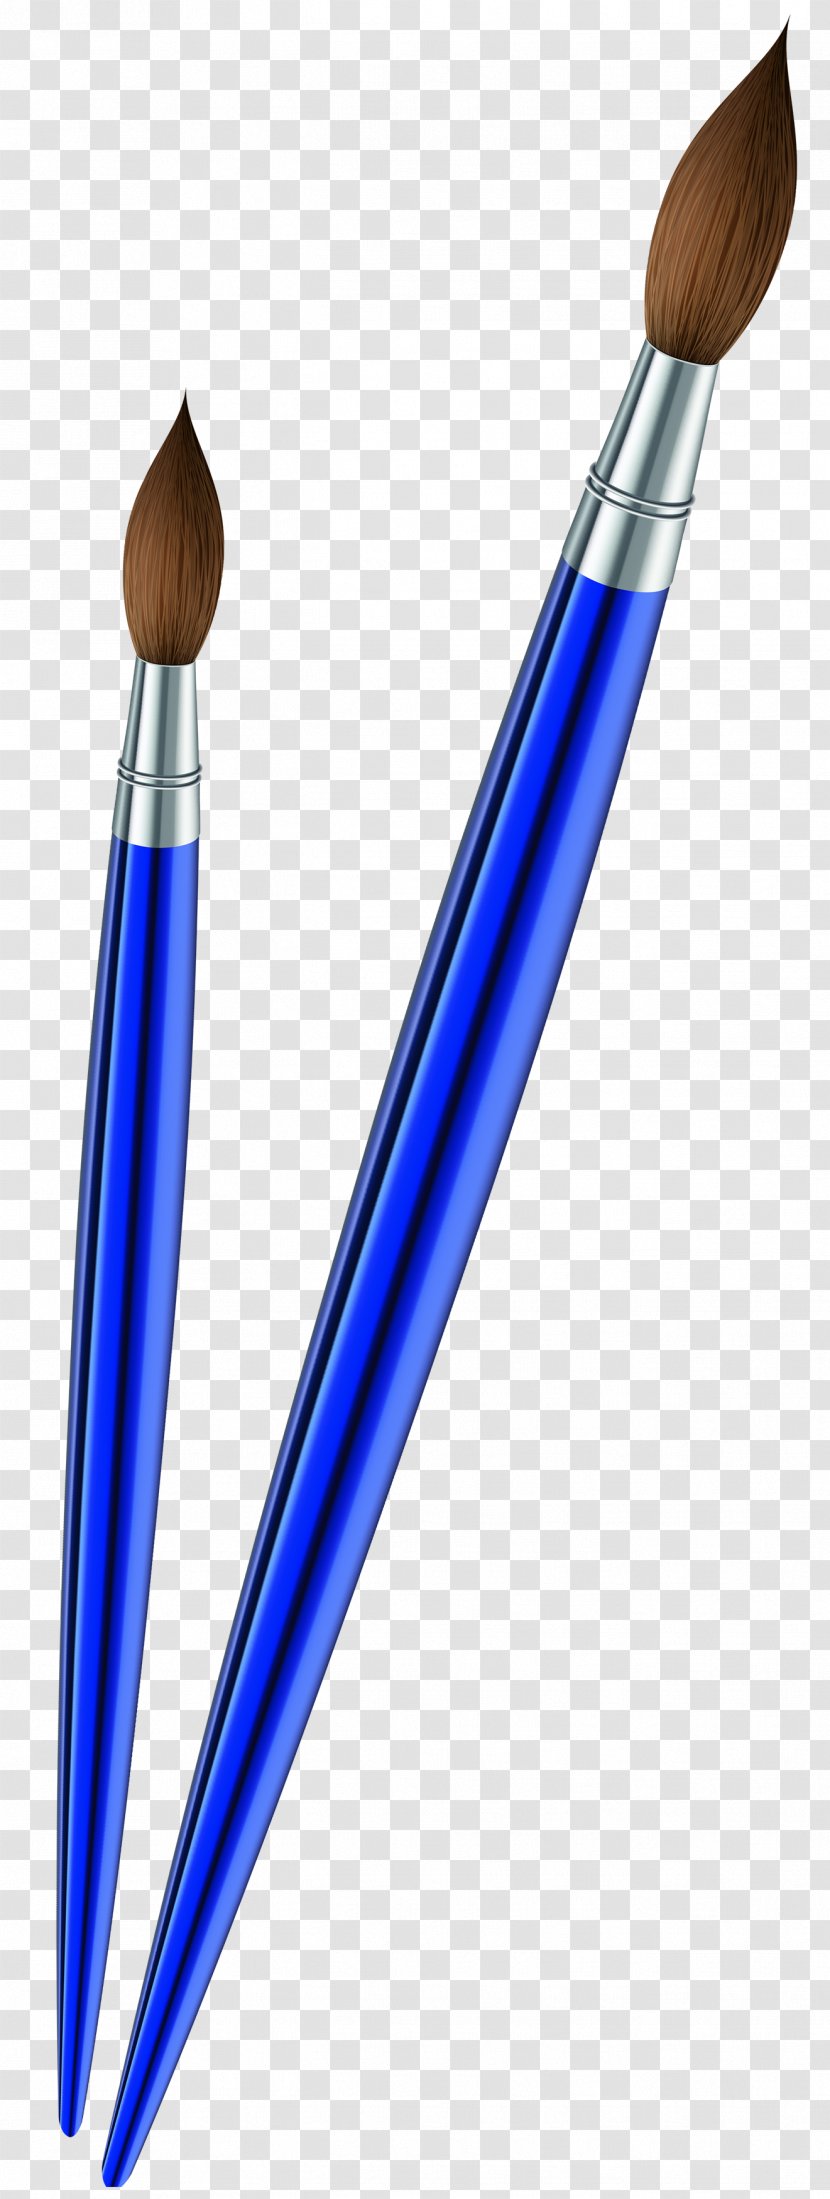 Paintbrush Clip Art - Pen - Brushes Transparent PNG